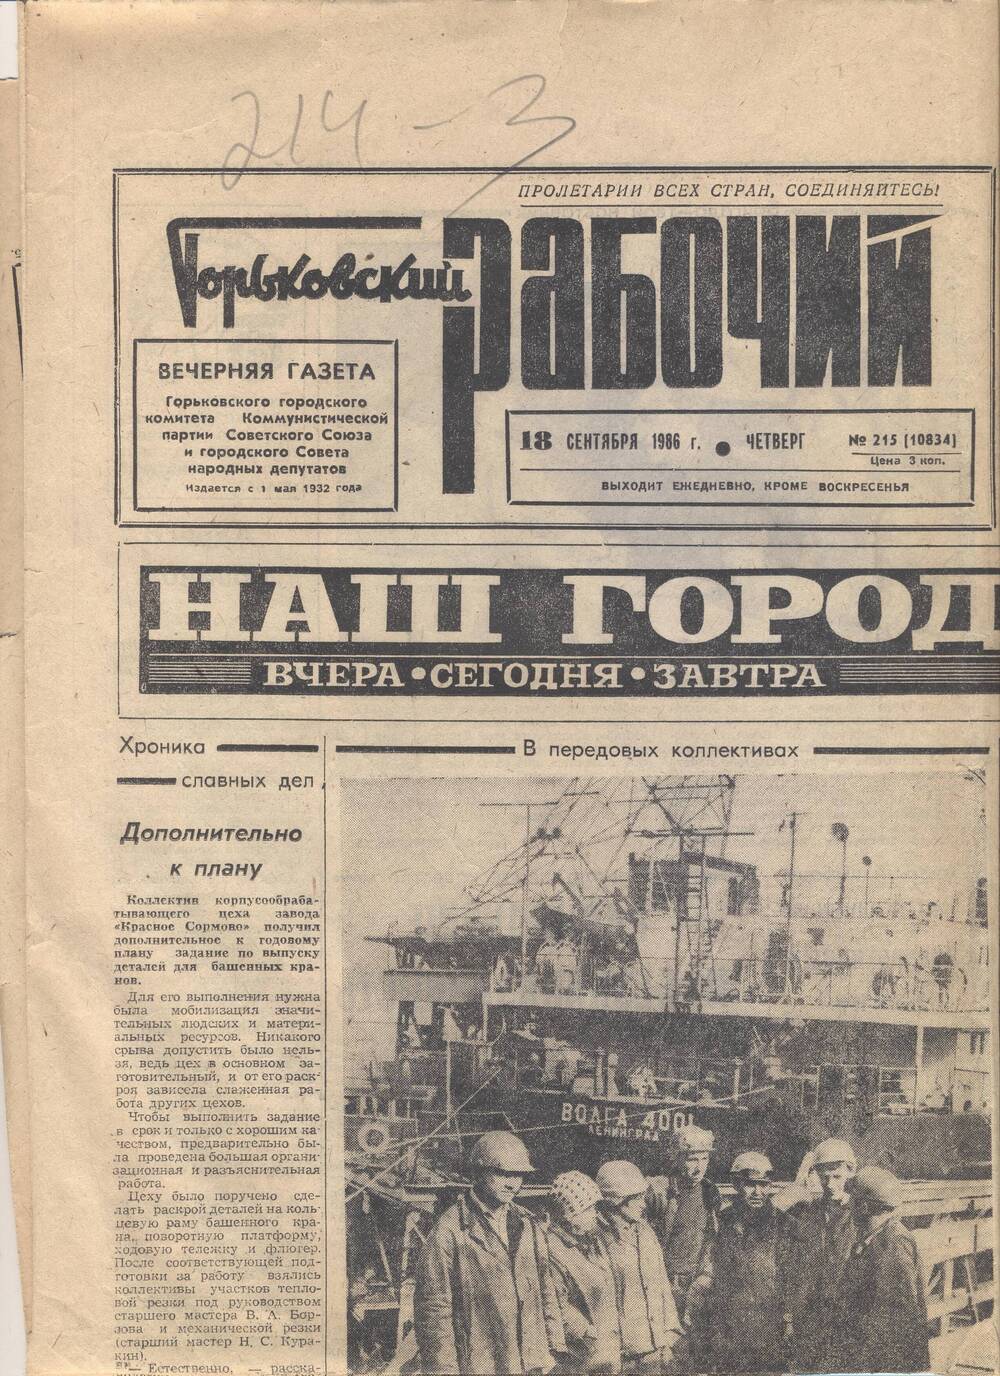 Газета Горьковский рабочий. № 215 (10834) от 18.09.1986 г.